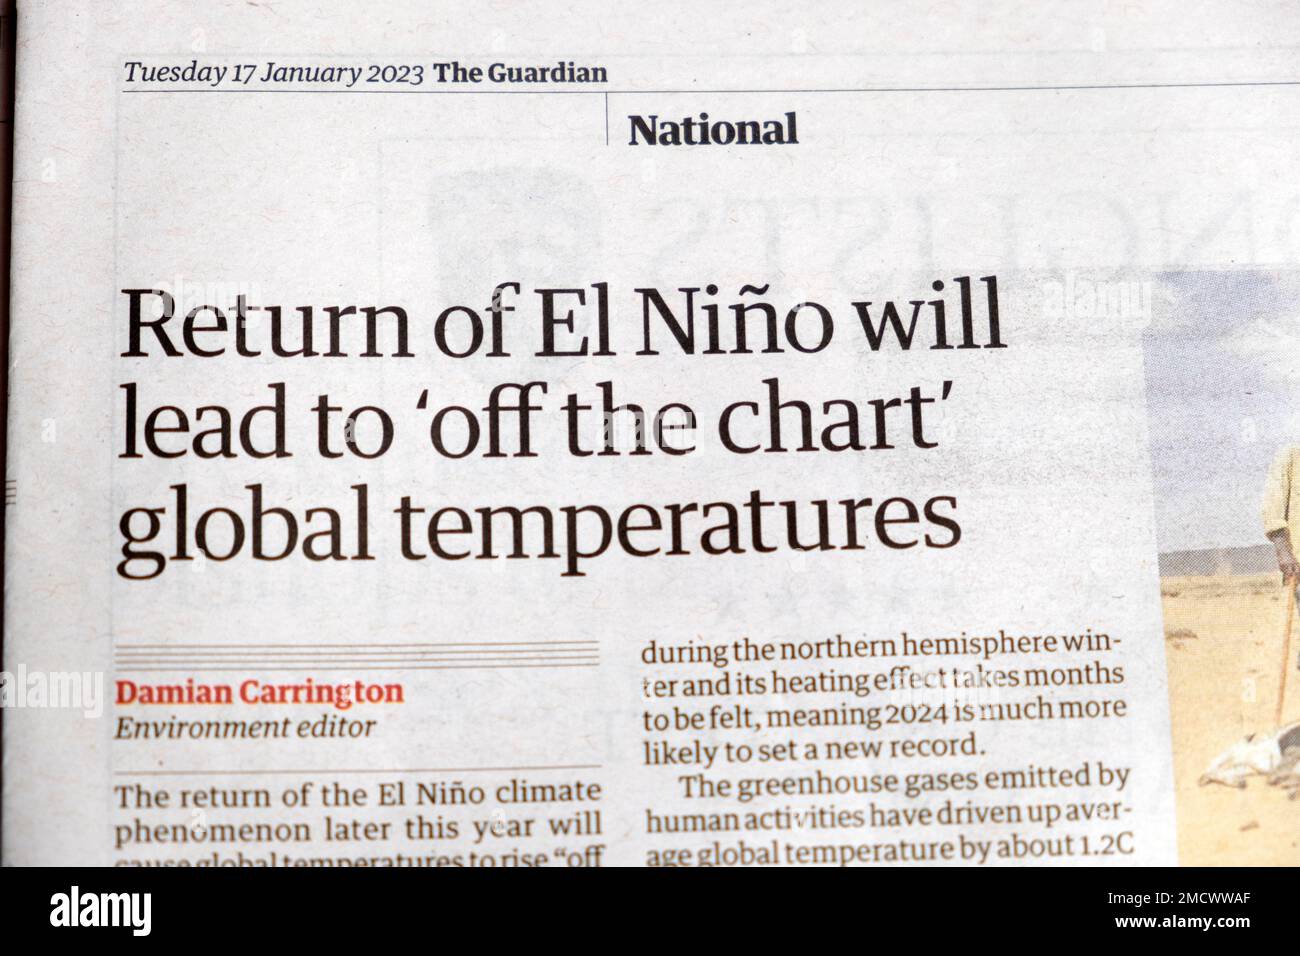 'Il ritorno di El Niño porterà a 'Off the chart temperature globali' Guardian giornale articolo headline clipping Cutting 17 gennaio 2023 Londra UK Foto Stock